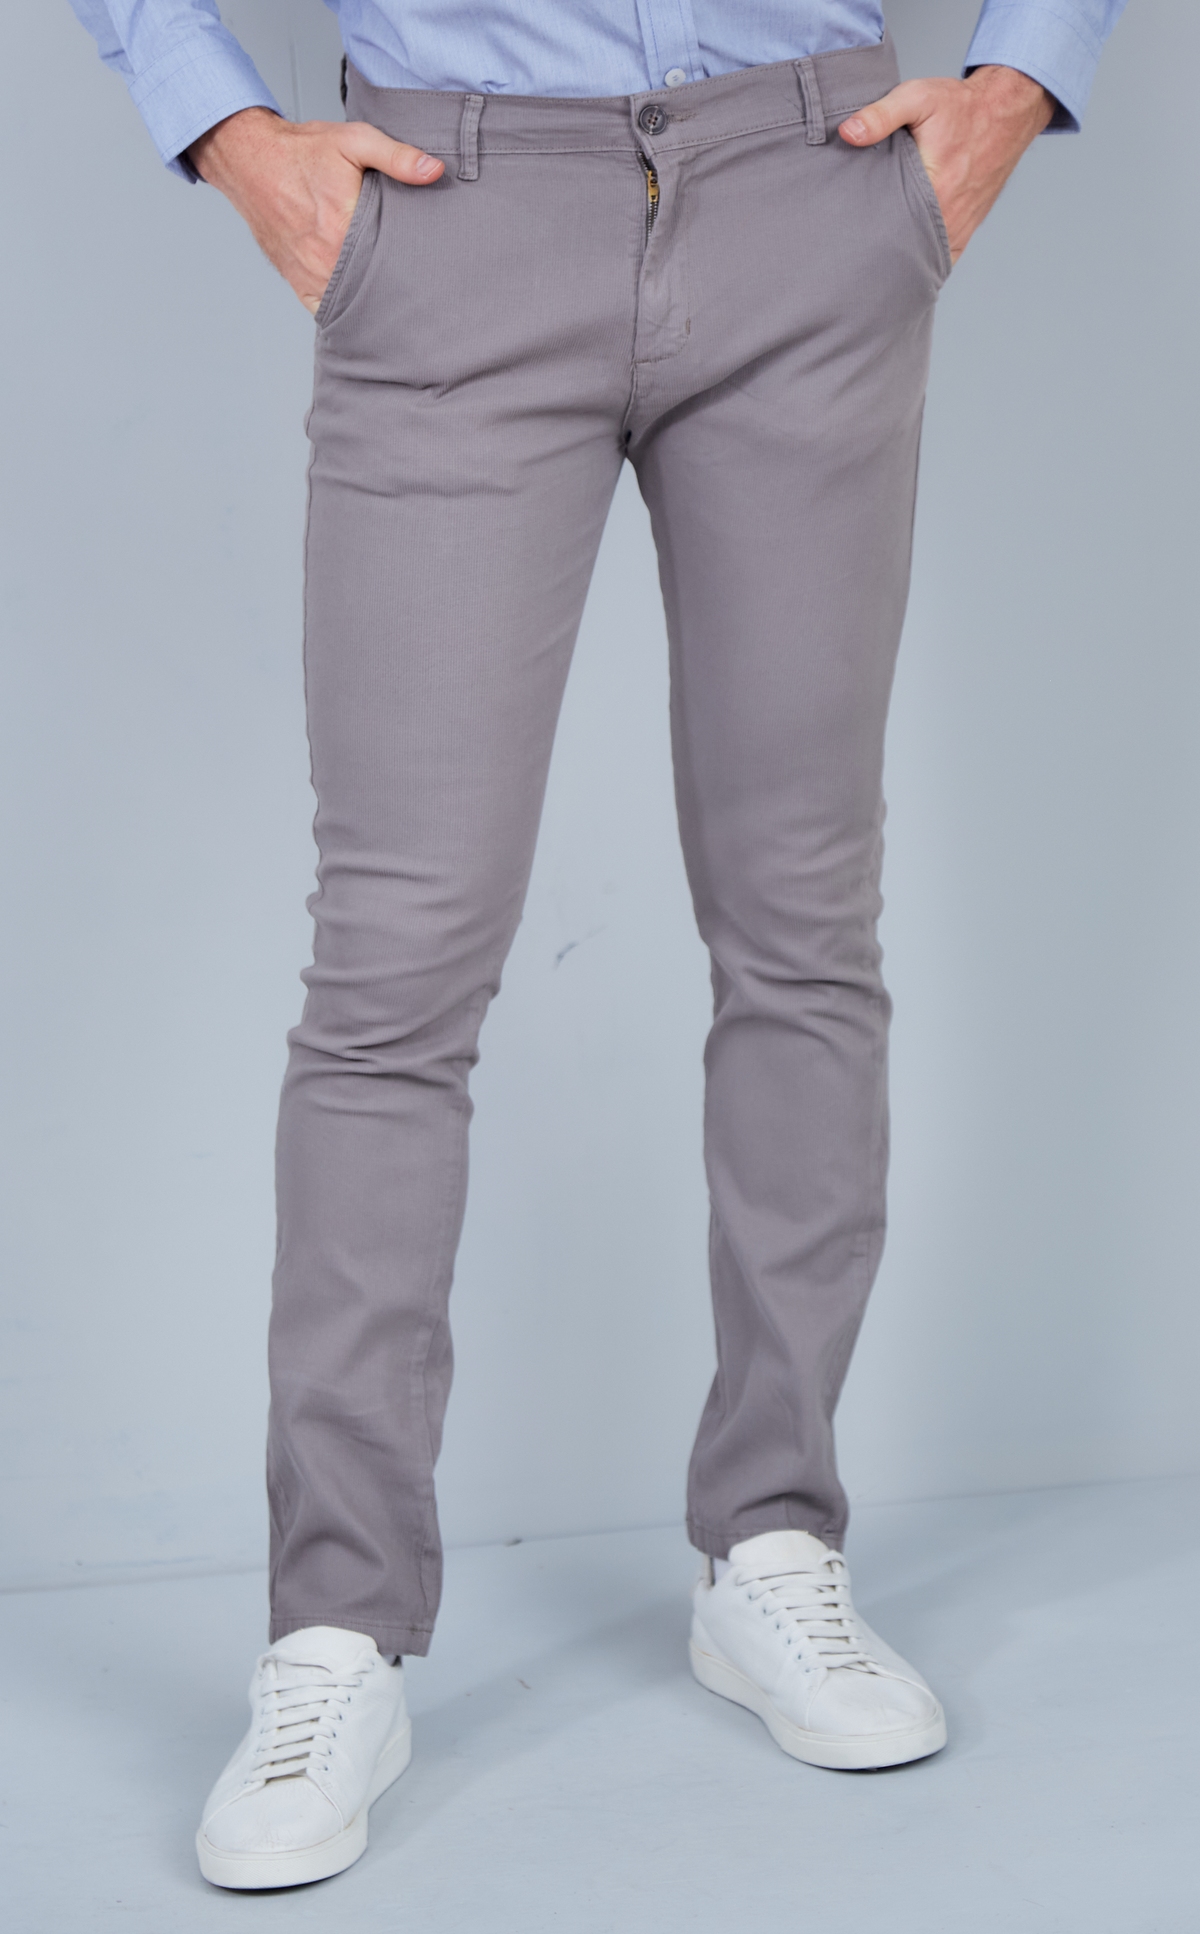 Pantalon chino gris oscuro